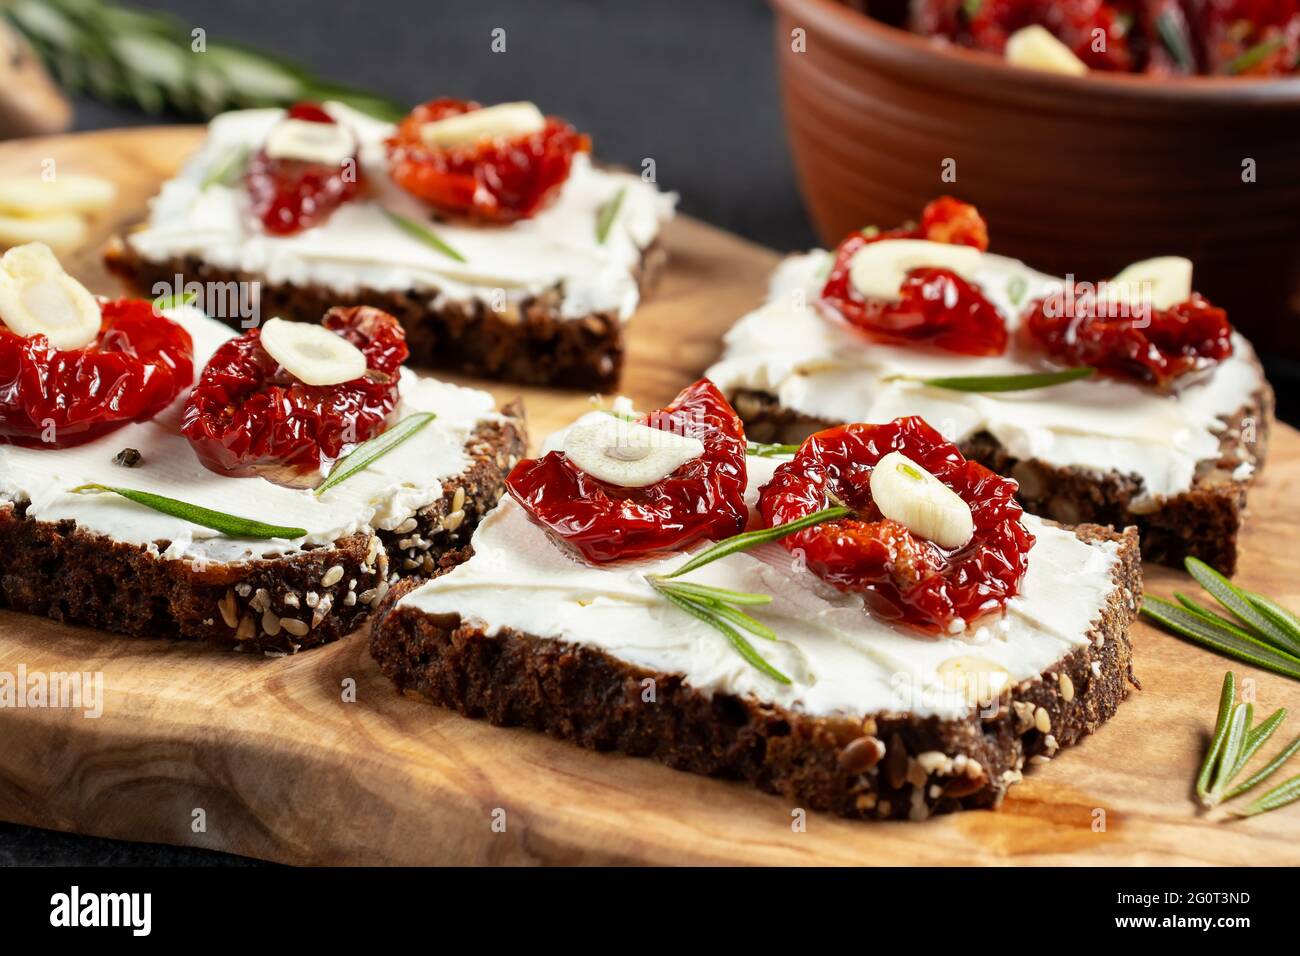 Petits-sandwiches multigrains faits maison avec fromage à la crème et tomates séchées sur un plateau en bois, gros plan. Concept de saine alimentation Banque D'Images